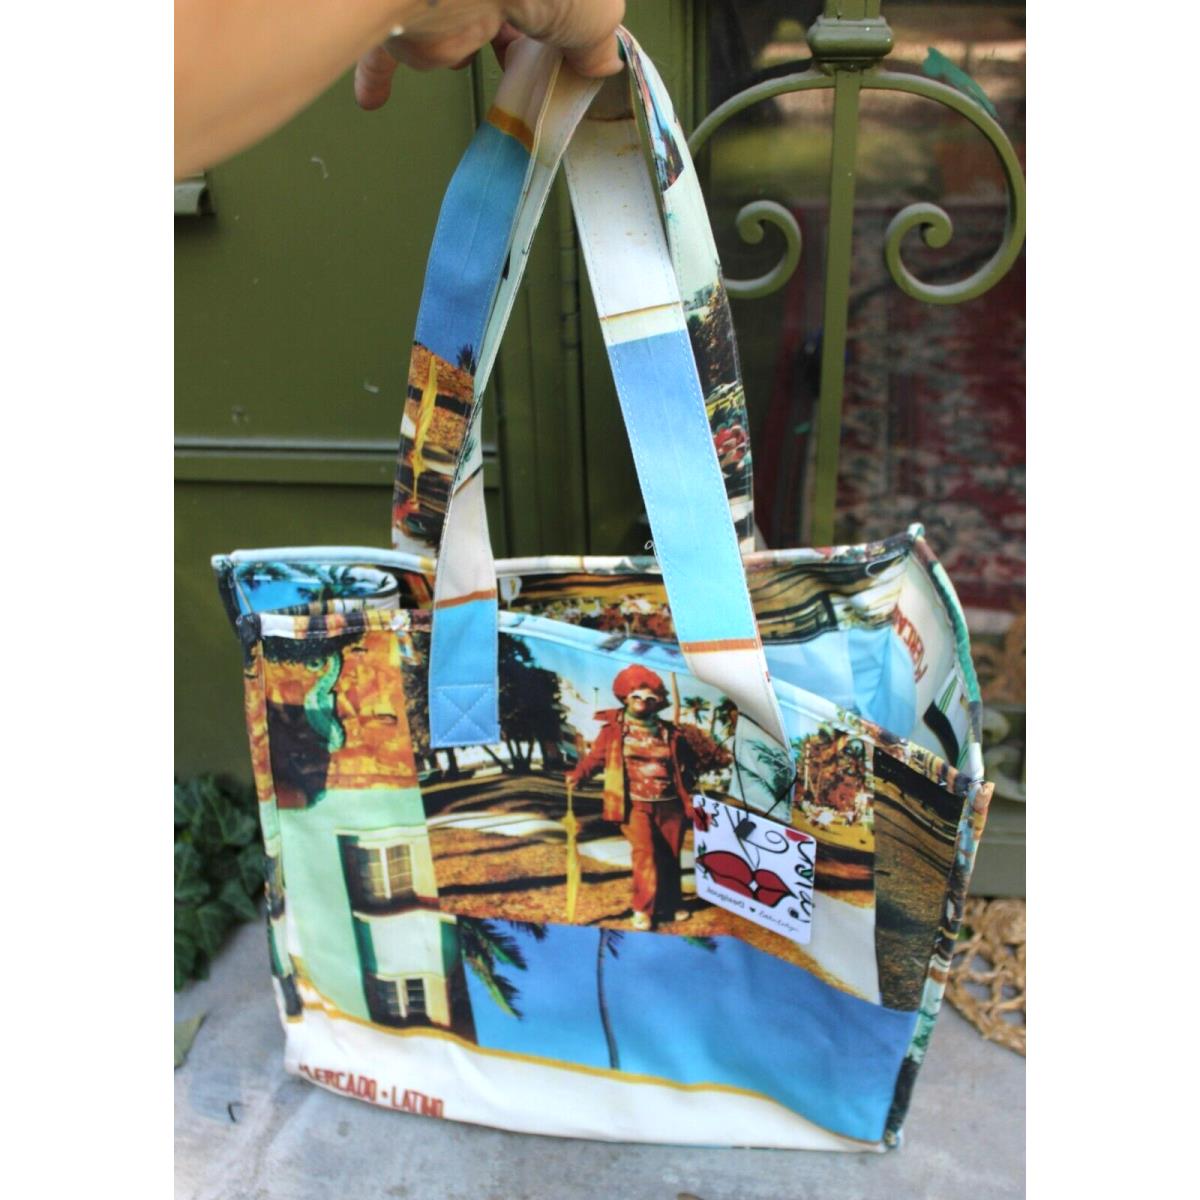 Desigual Esteban Cartazar South Beach Shopping / Shopper Tote Bag